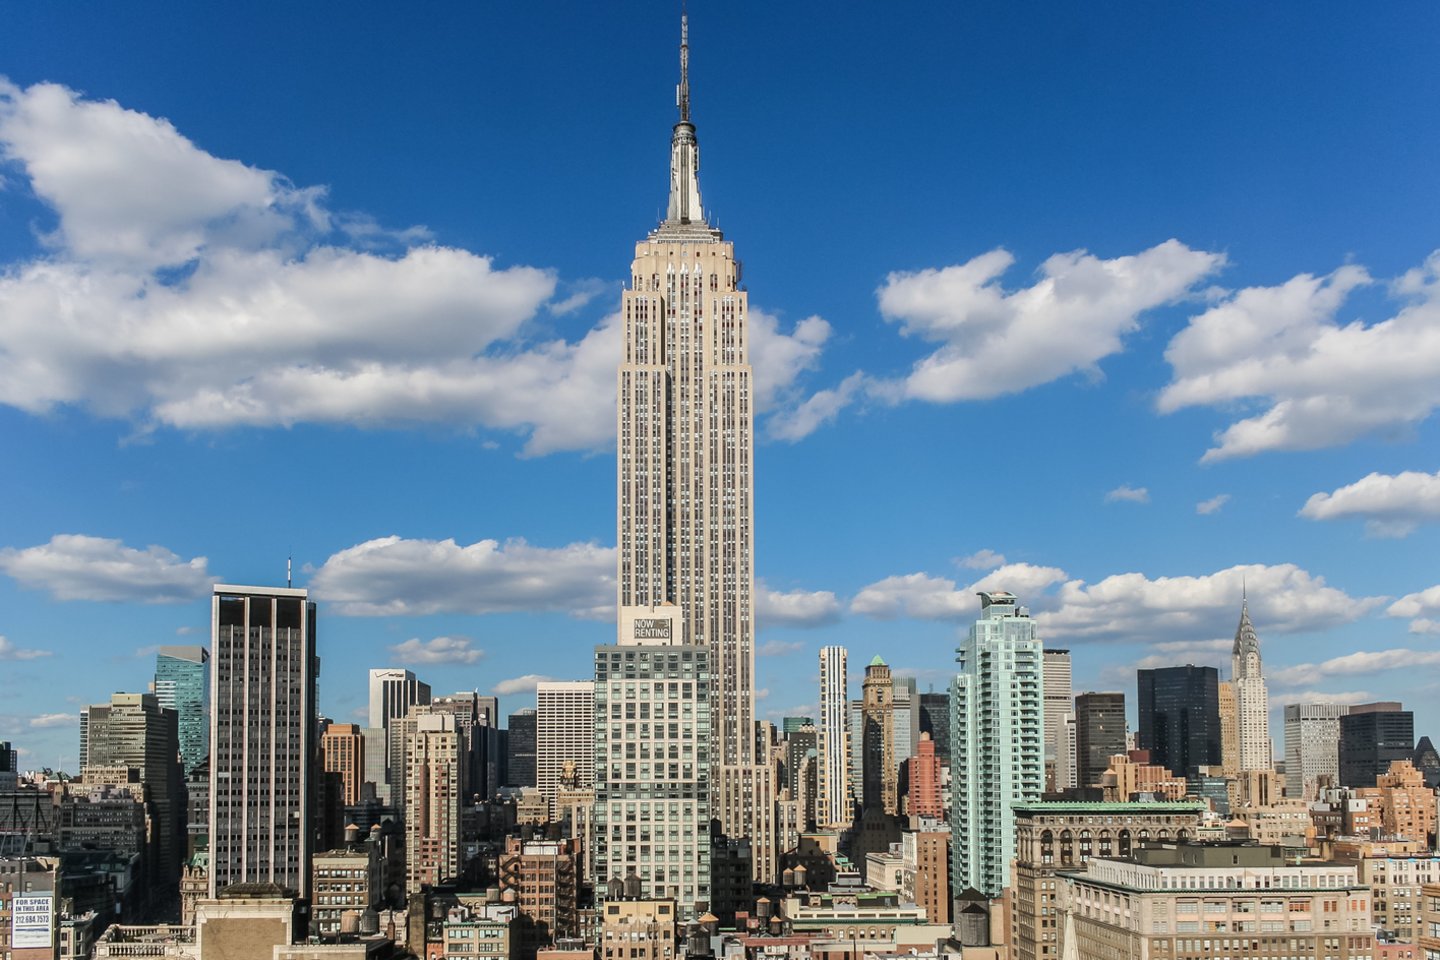 2006 QQ23 yra maždaug 570 m skersmens, o tai yra daugiau nei „Empire State Building“ – antras pagal dydį pastatas JAV, kurio aukštis, su antena, siekia 449 m. <br>123RF nuotr. 